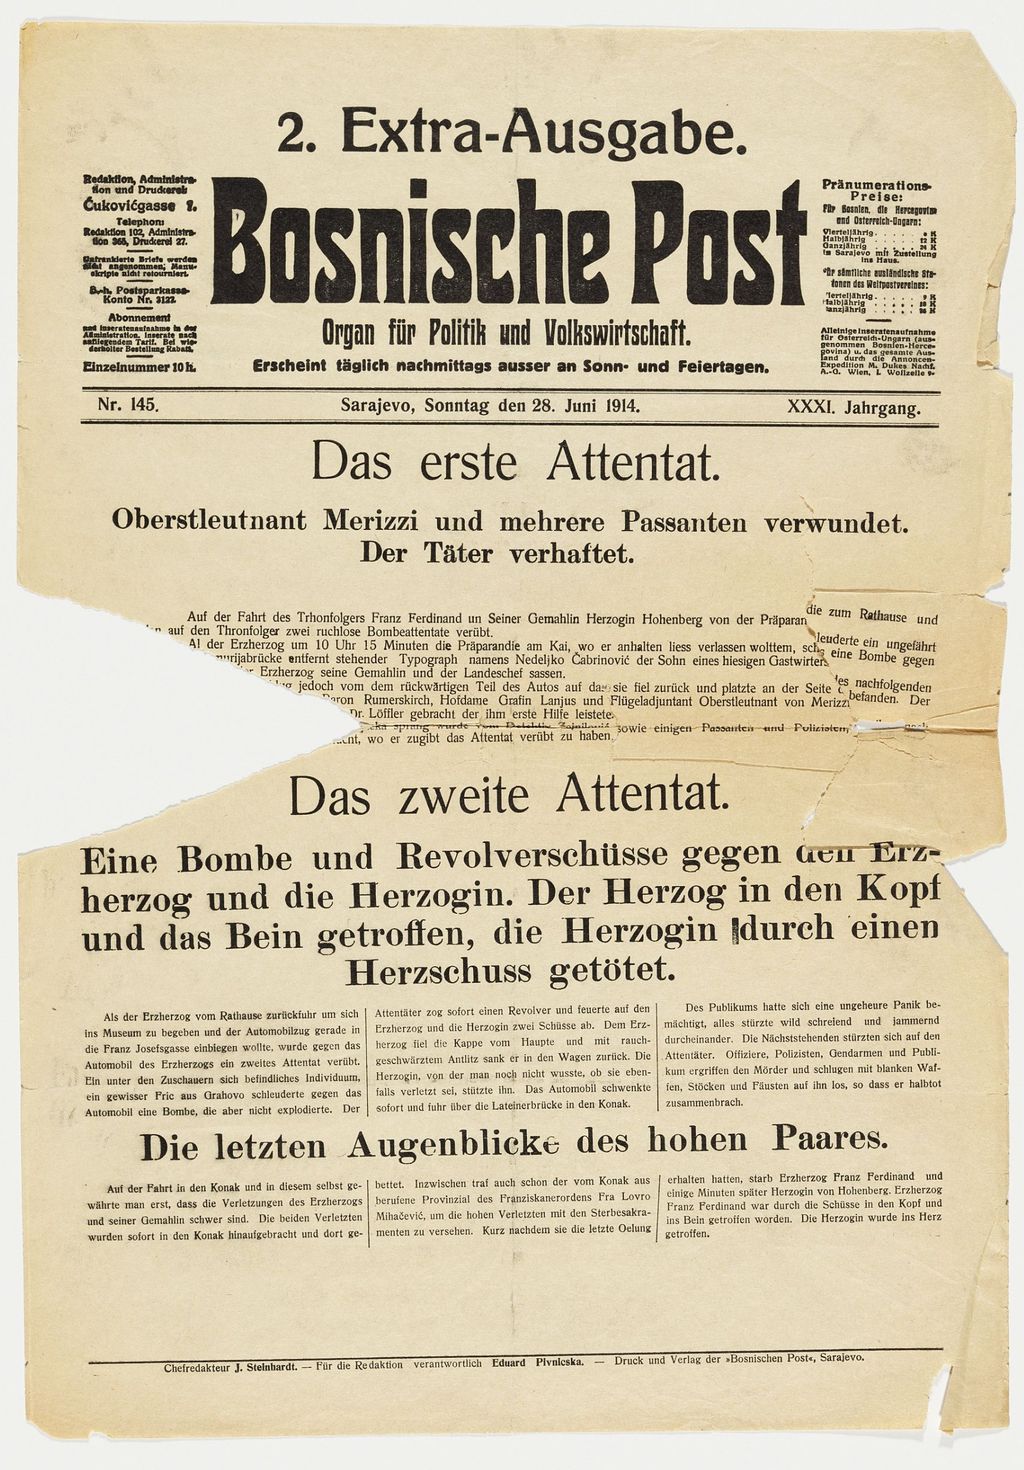 Zeitung: Bosnische Post zum Attentat in Sarajewo, 1914